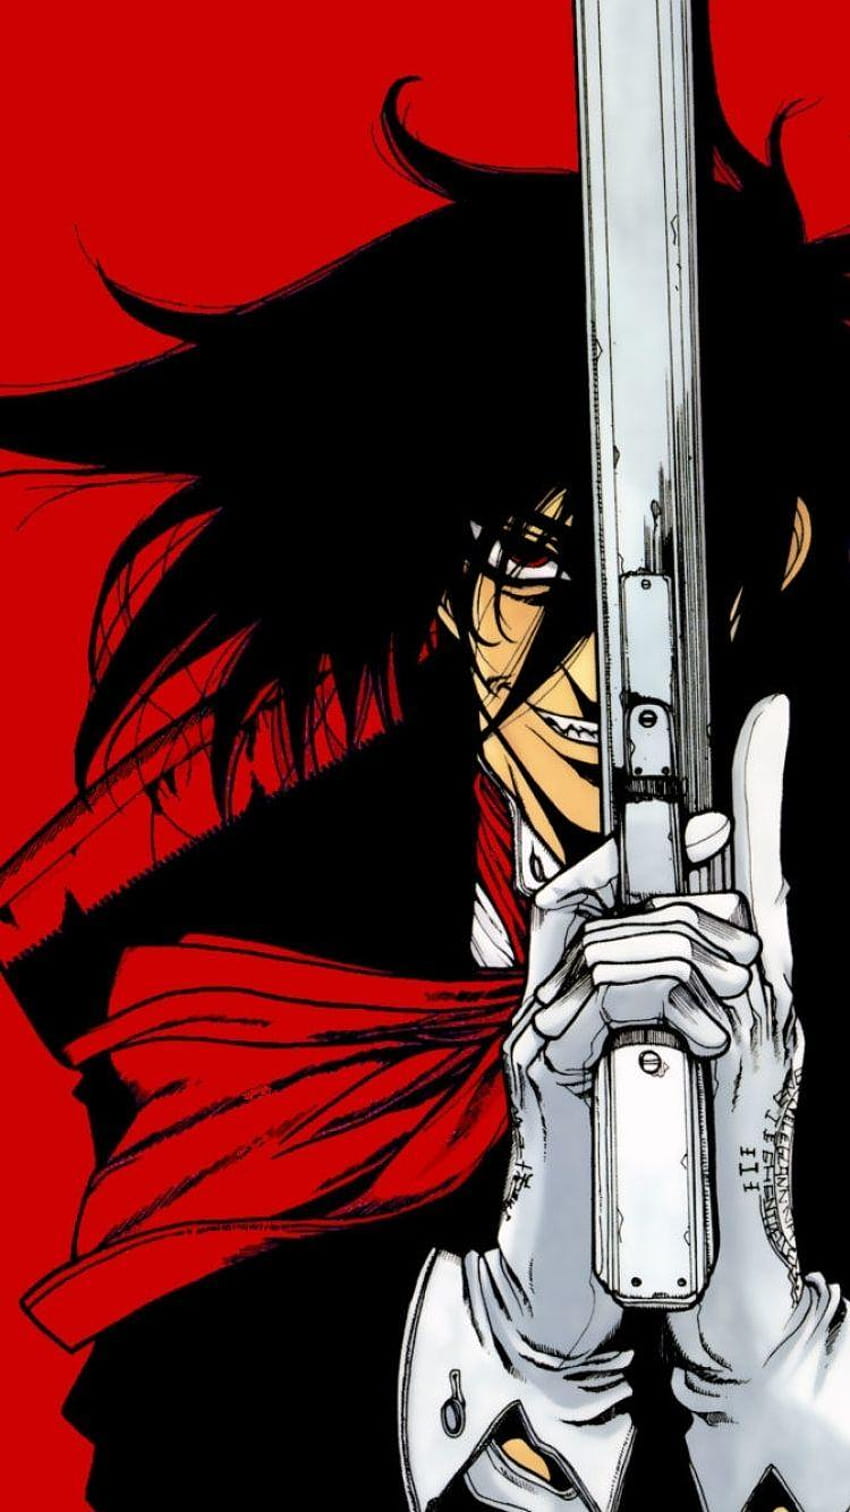 Hellsing: 10 Reasons Why It's The Best Vampire Manga